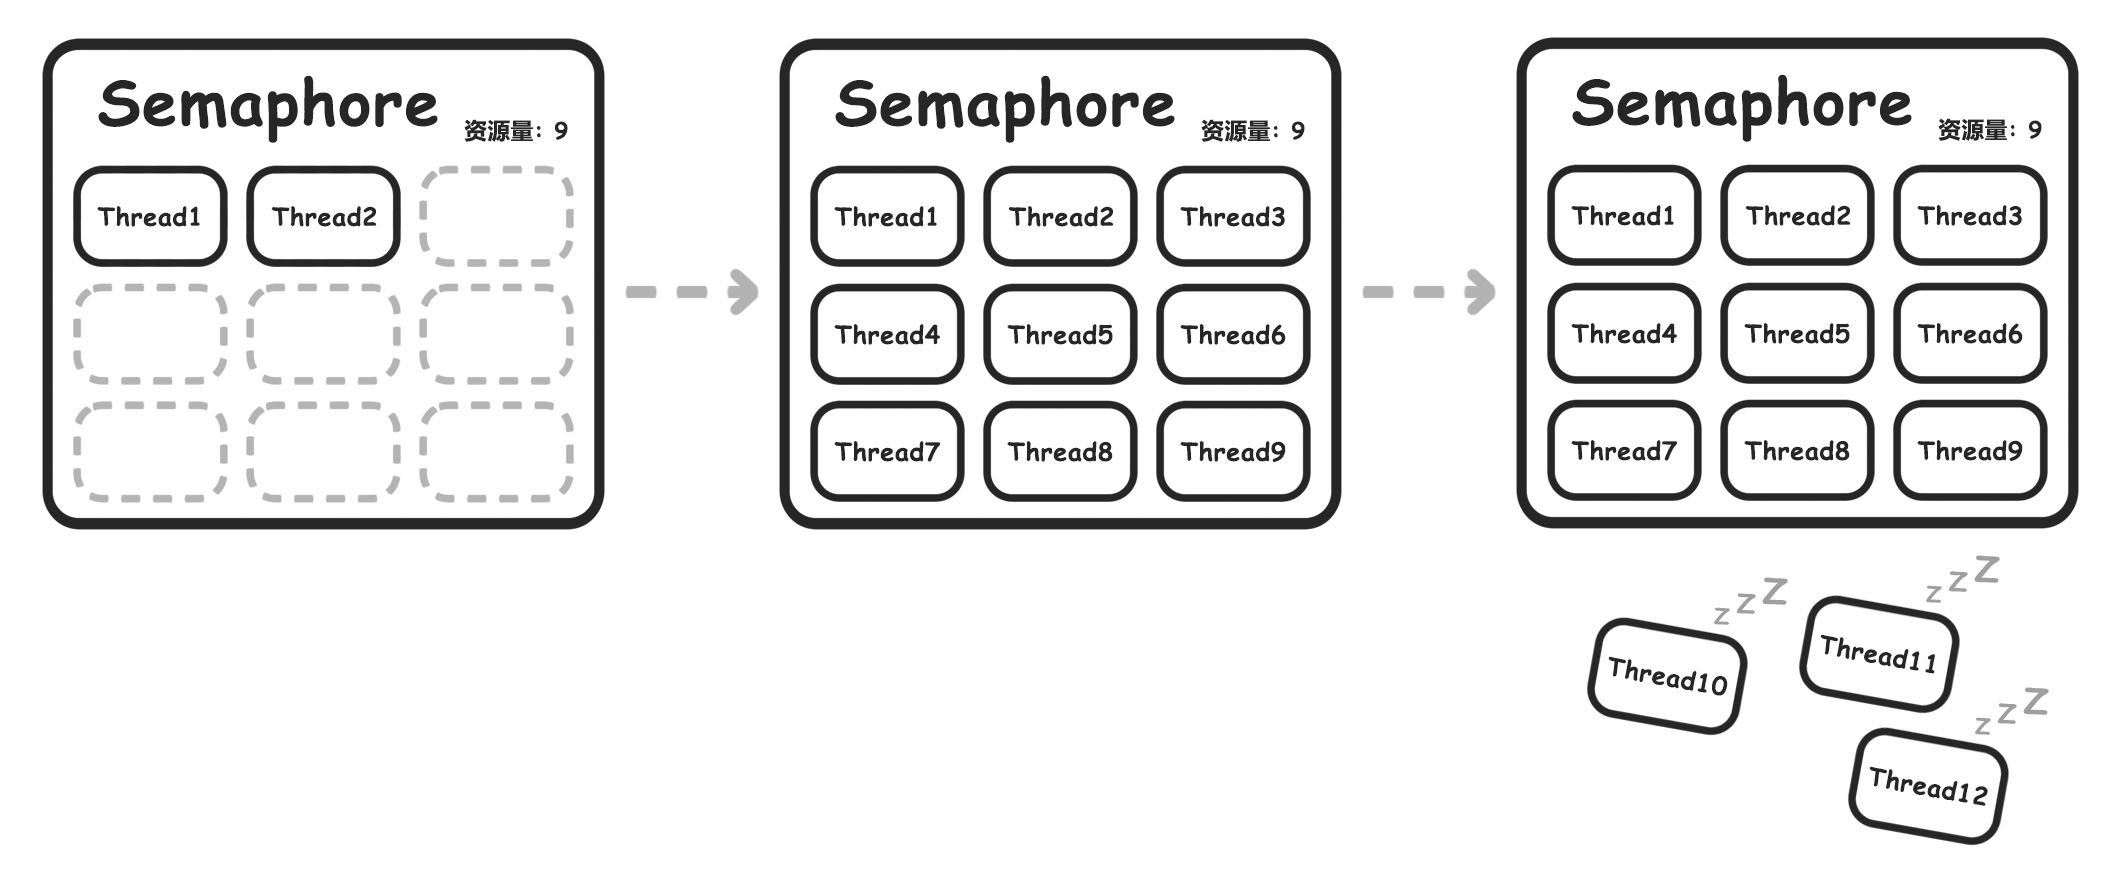 Semaphore_diagram